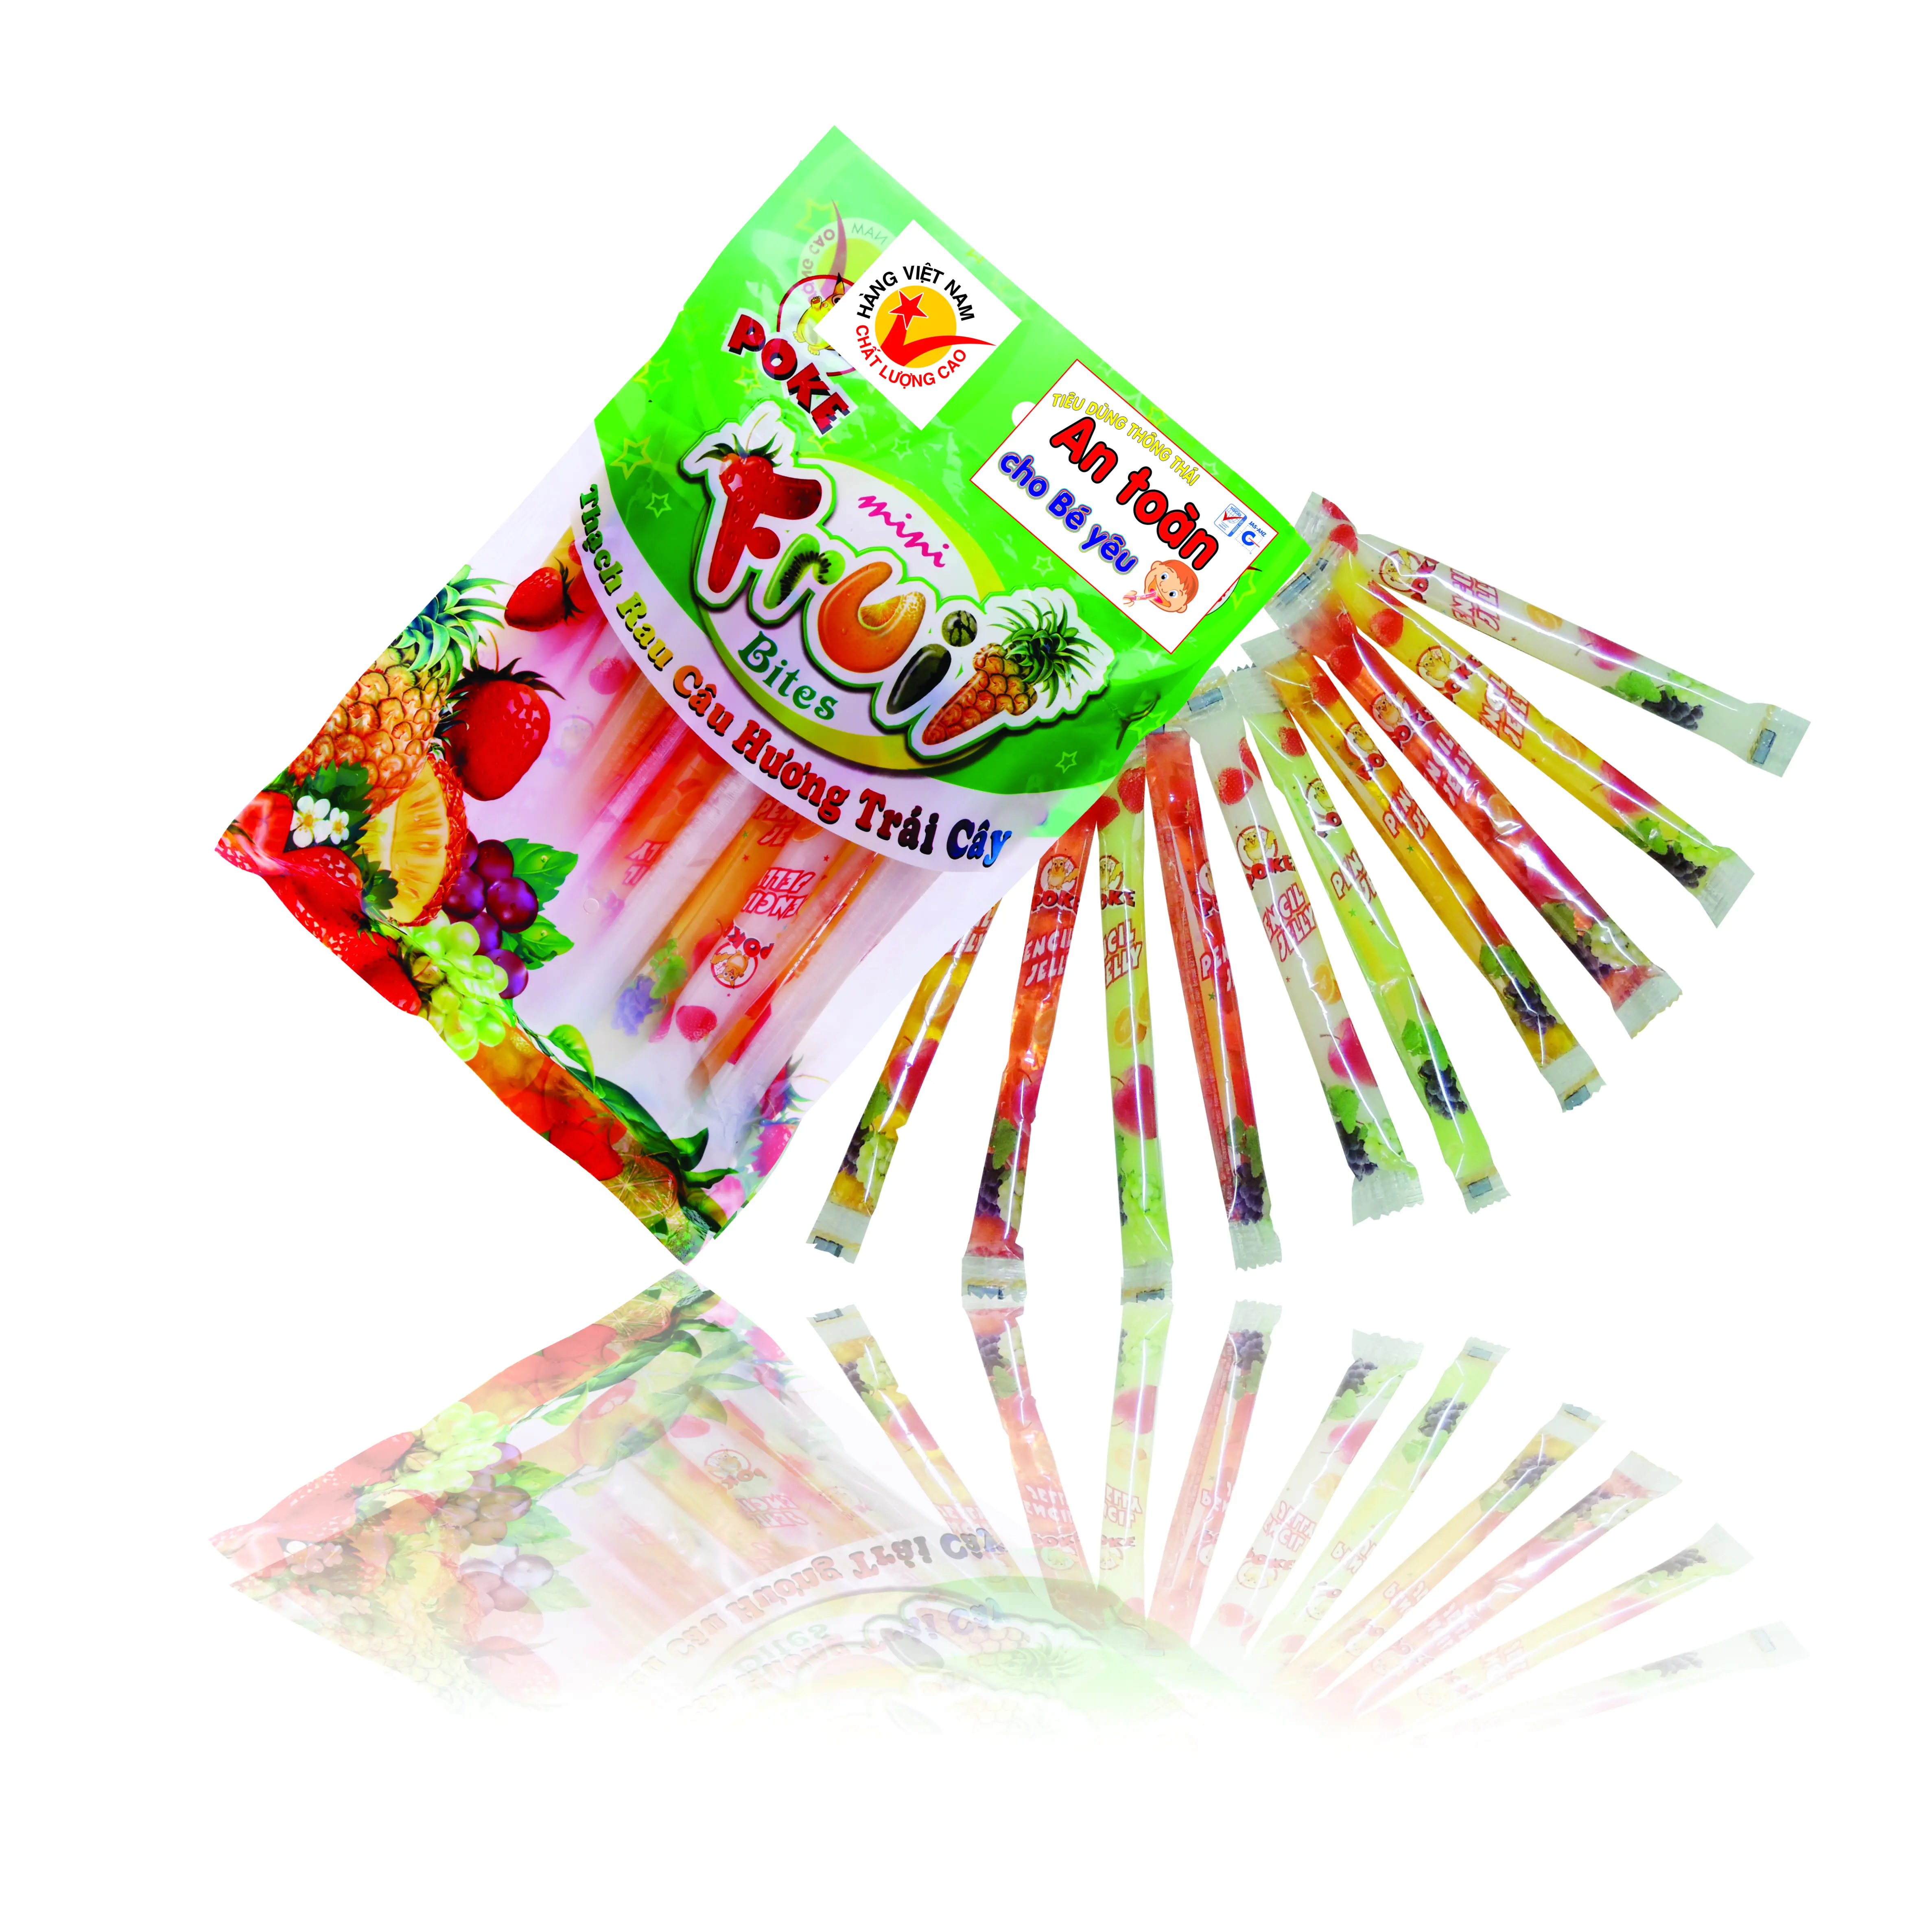 De Best Verkopende Product Uit Vietnam & Jelly Pudding Type Diverse Smaak Potlood Fruit Jelly 340G